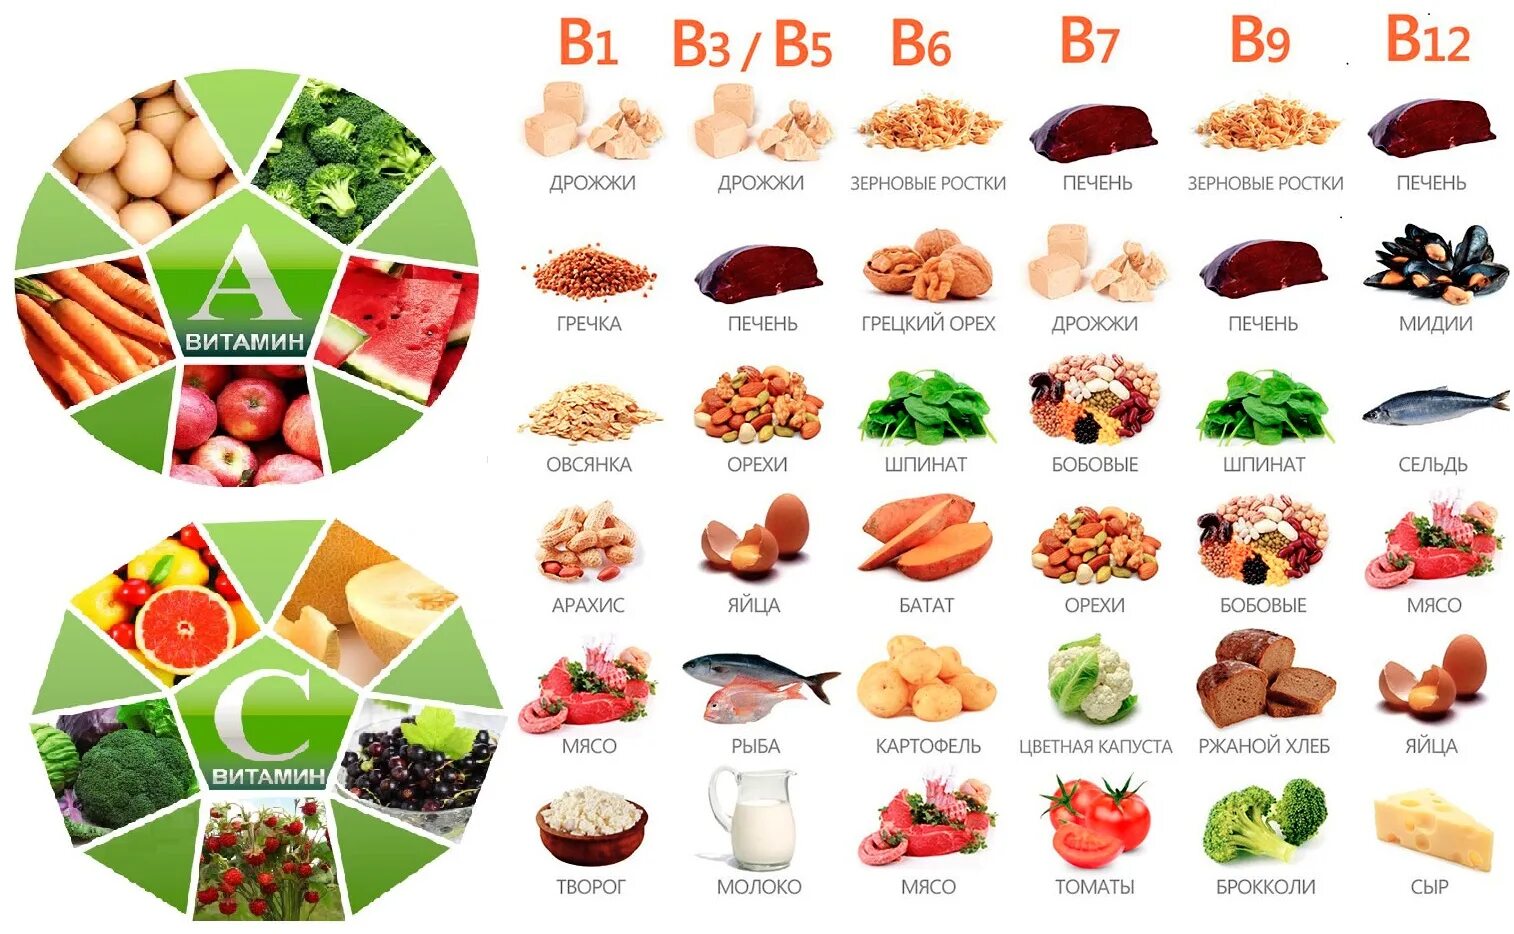 Какие есть витамины группы б. В каких продуктах содержится витамины группы b. Продукты содержащие витамин b. Витамин b в каких продуктах содержится больше. Продукты с витамином б.